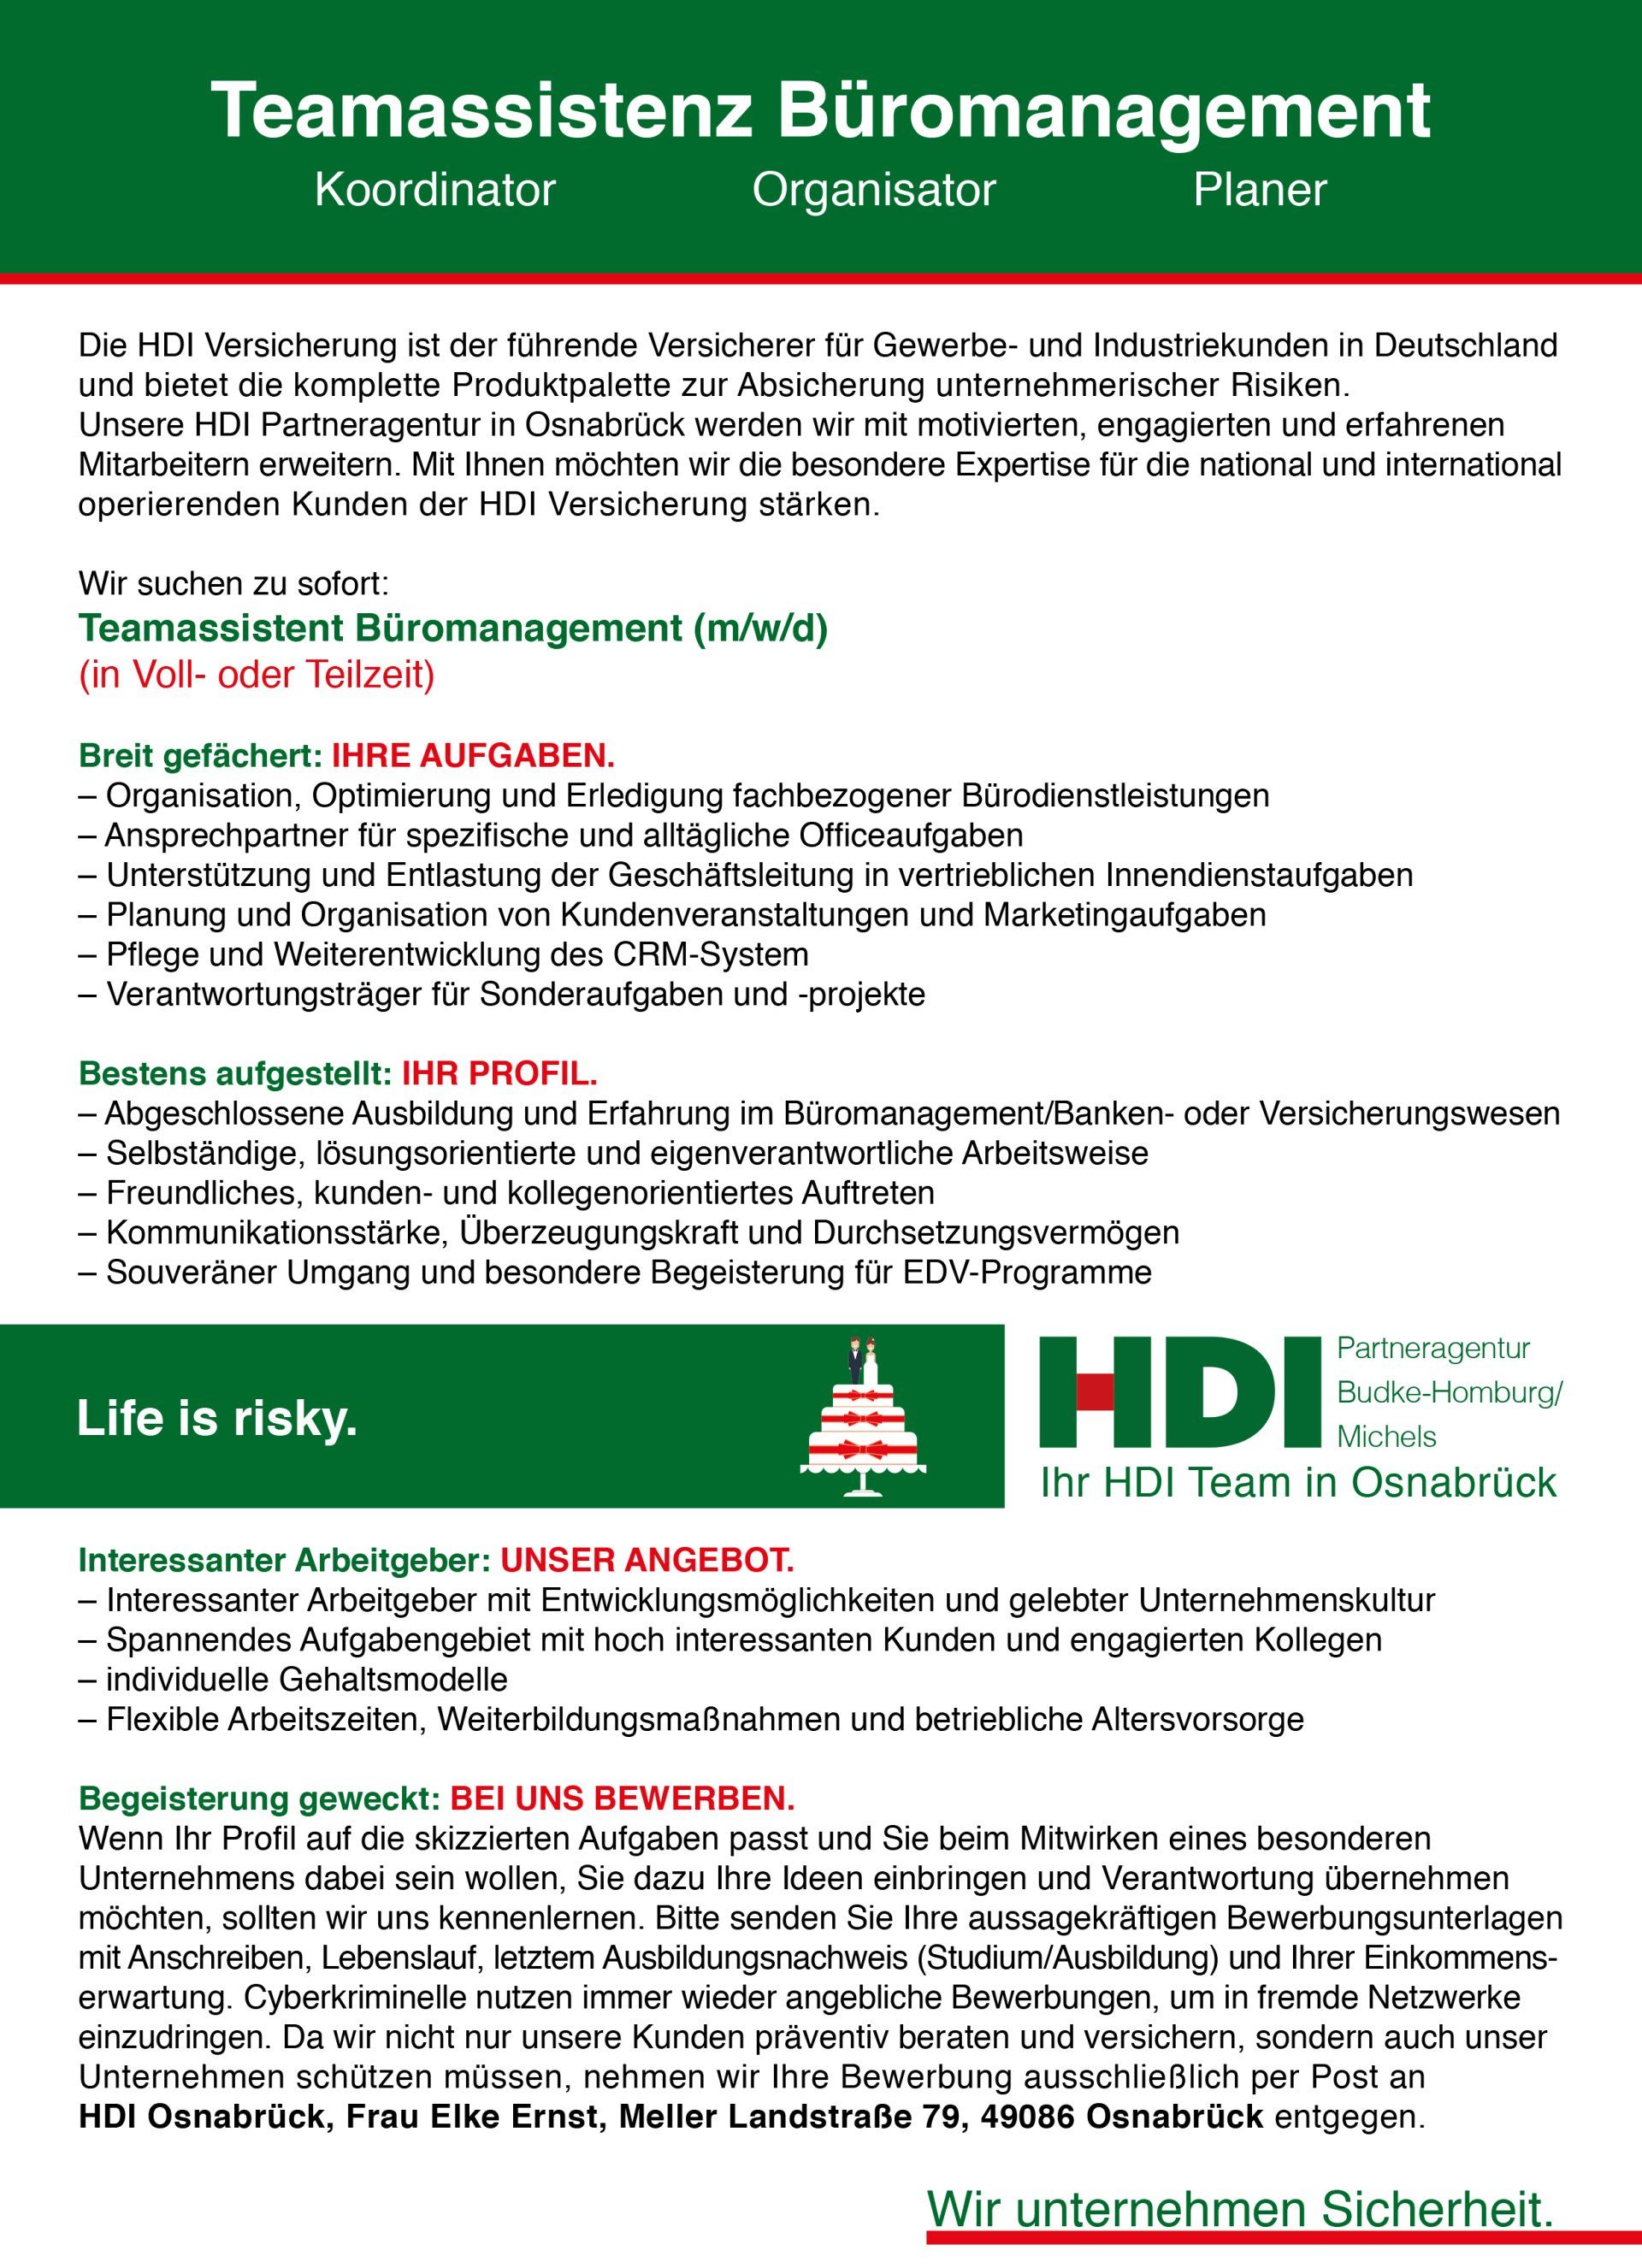 2-serve HDI Osnabrück Stellenanzeige Teamassistenz Büromanagement Vollzeit Teilzeit